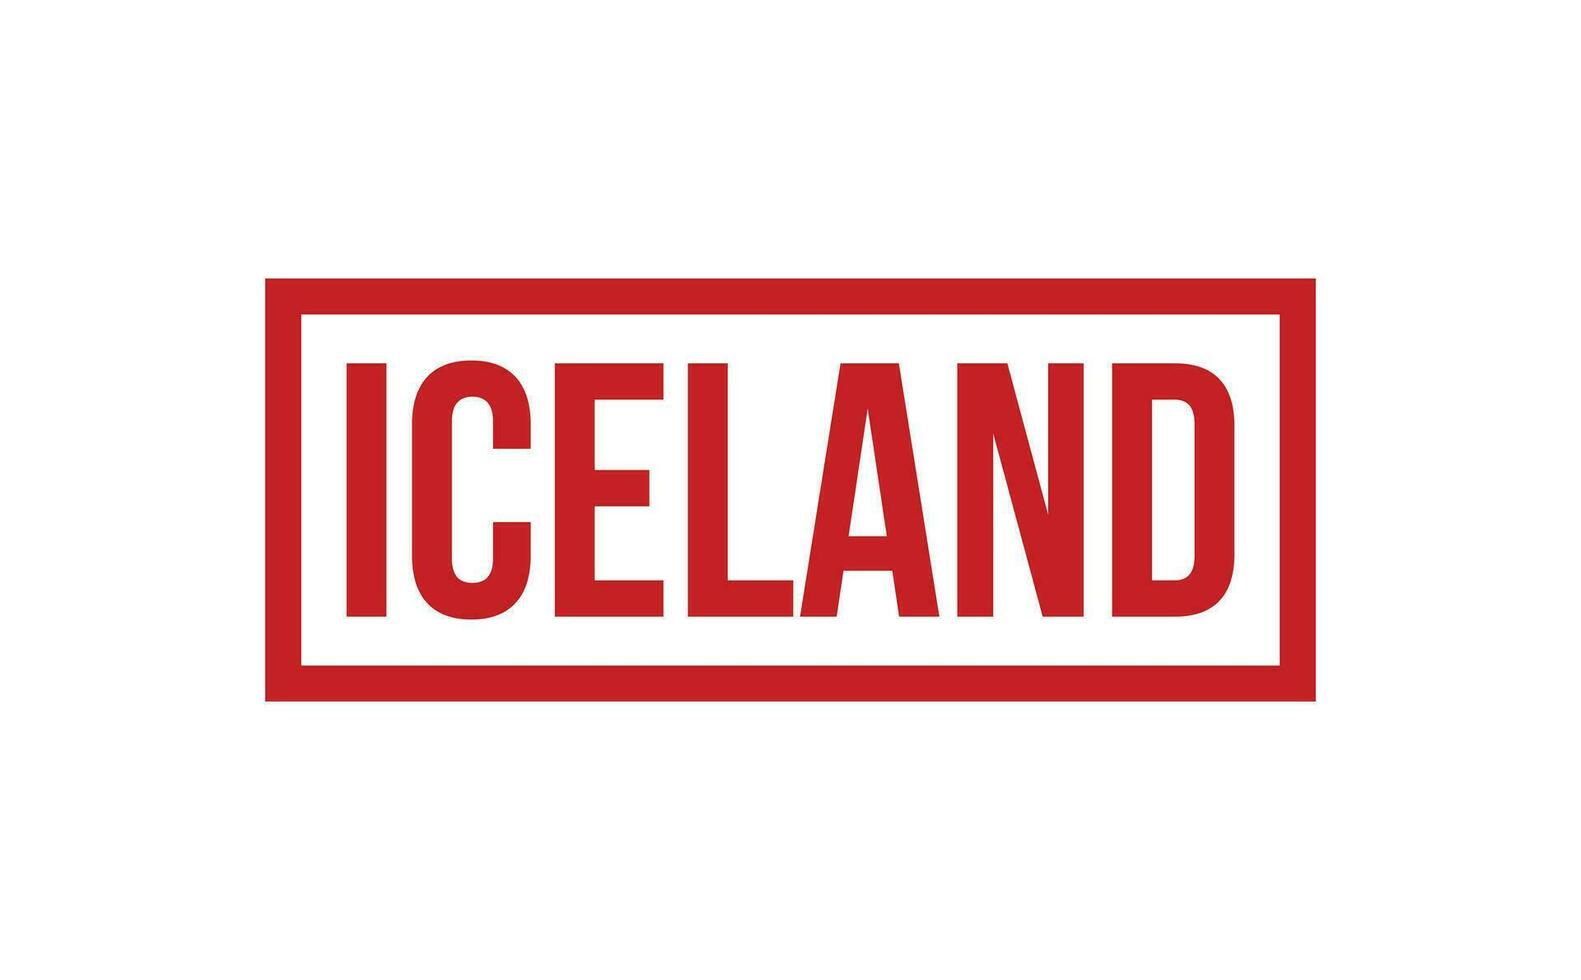 Islandia caucho sello sello vector